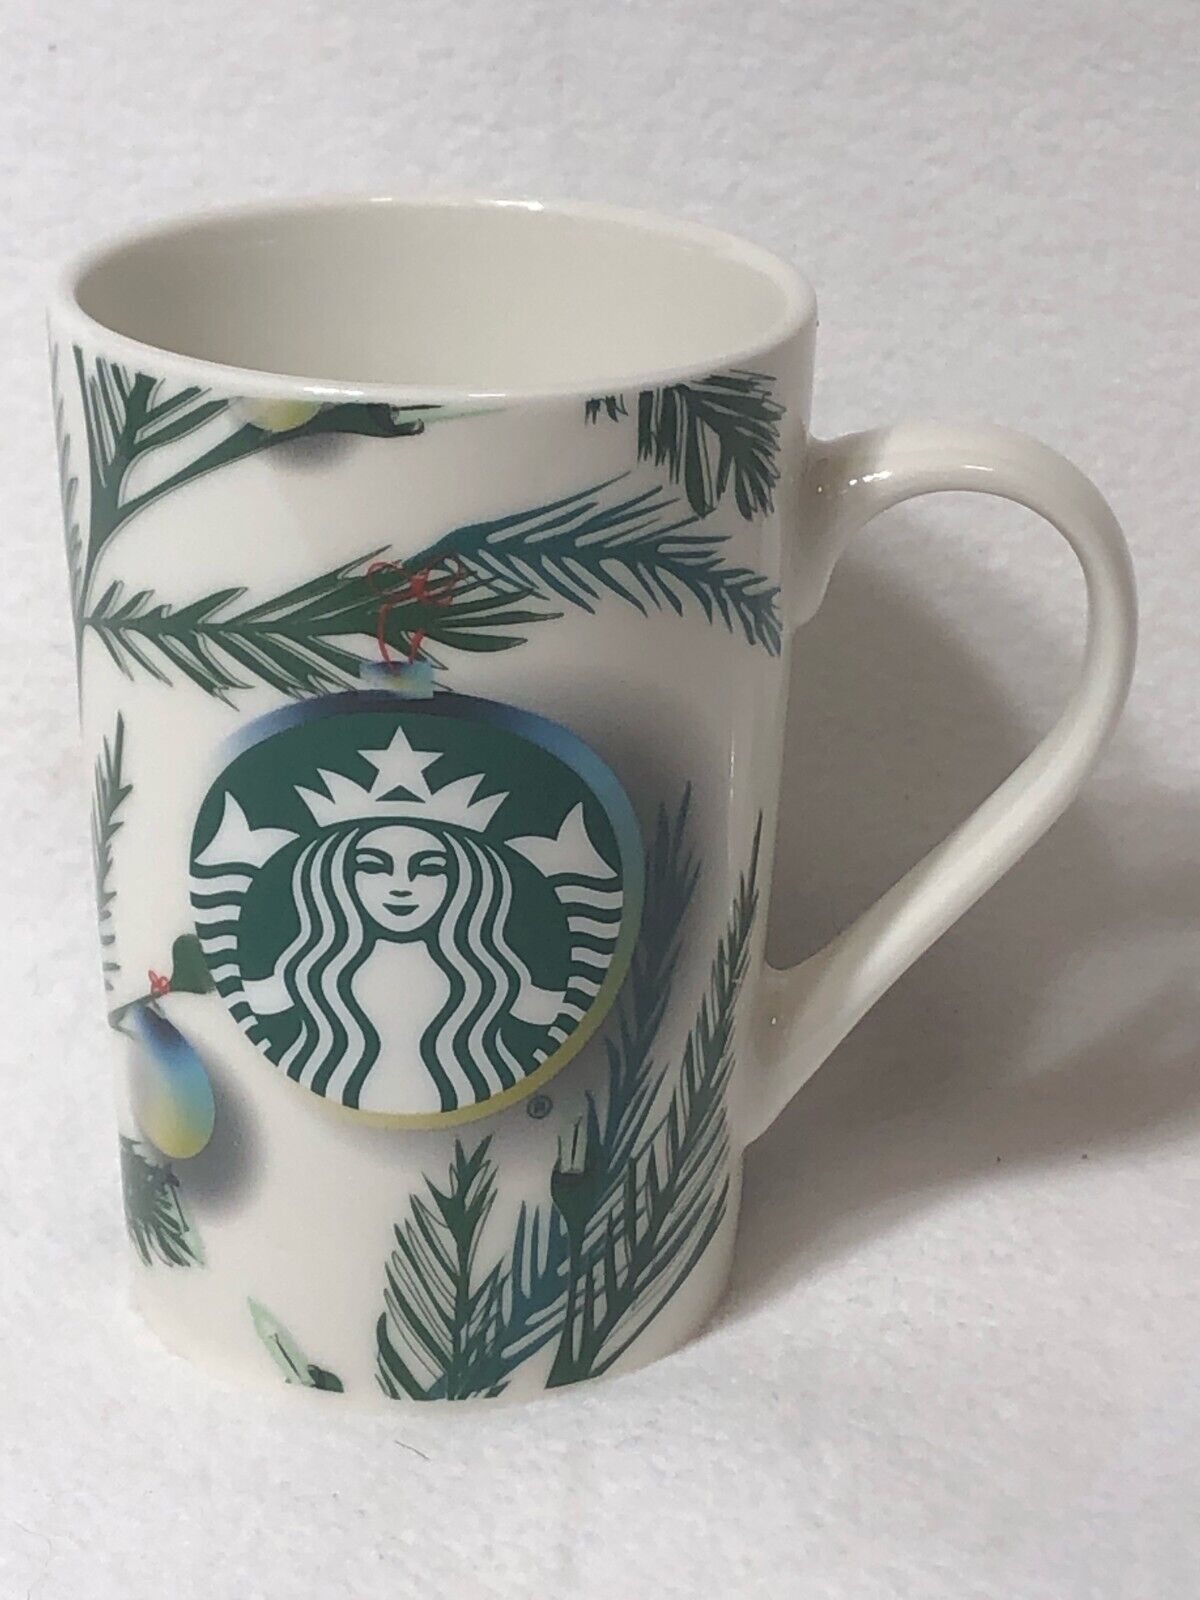 Starbucks Christmas Holiday Mug - Tree Branch, Lights, Ornament - 2020 11oz